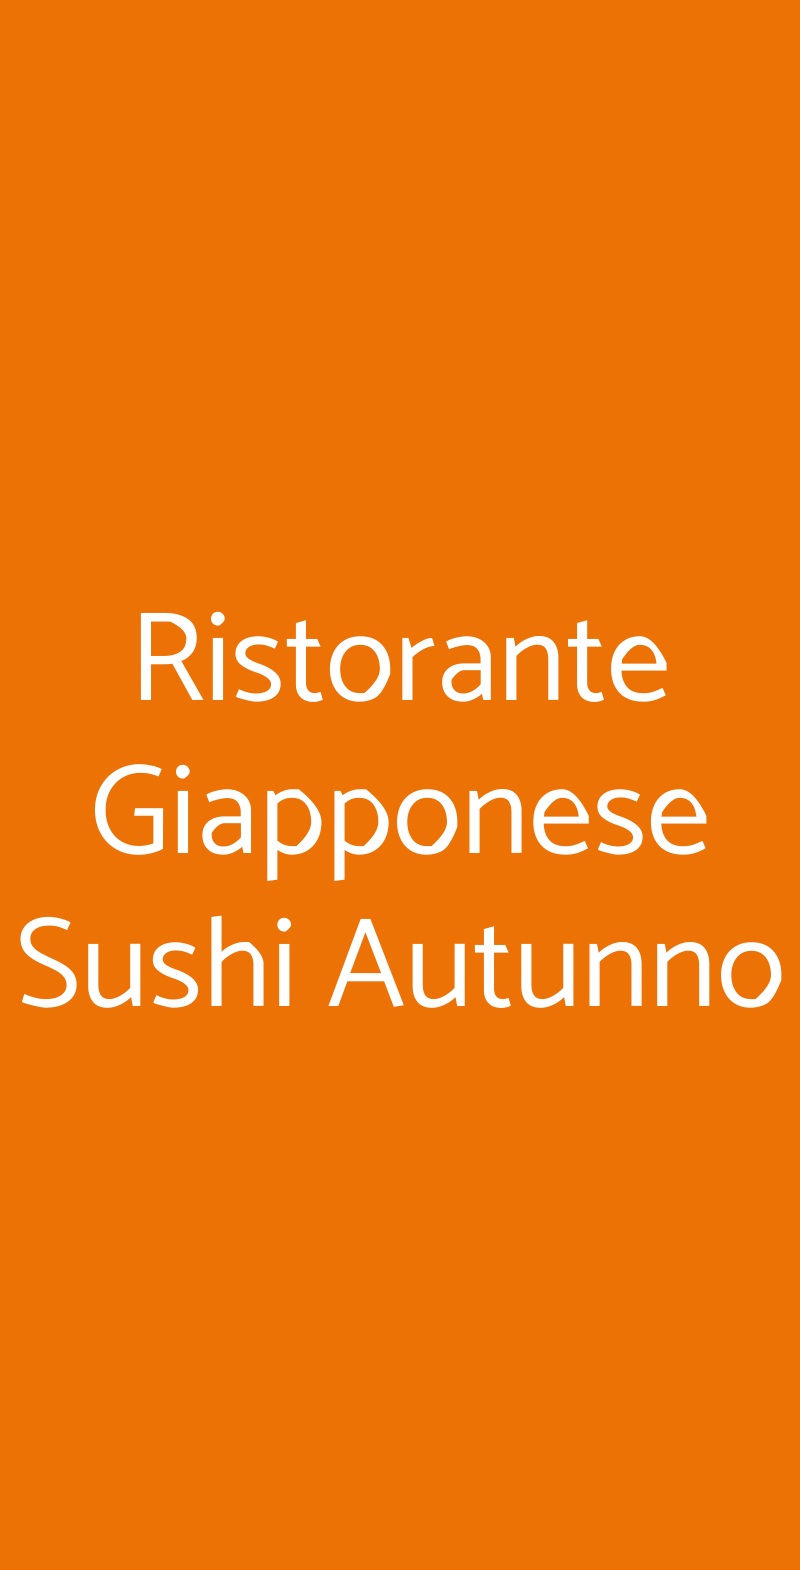 Ristorante Giapponese Sushi Autunno Taranto menù 1 pagina